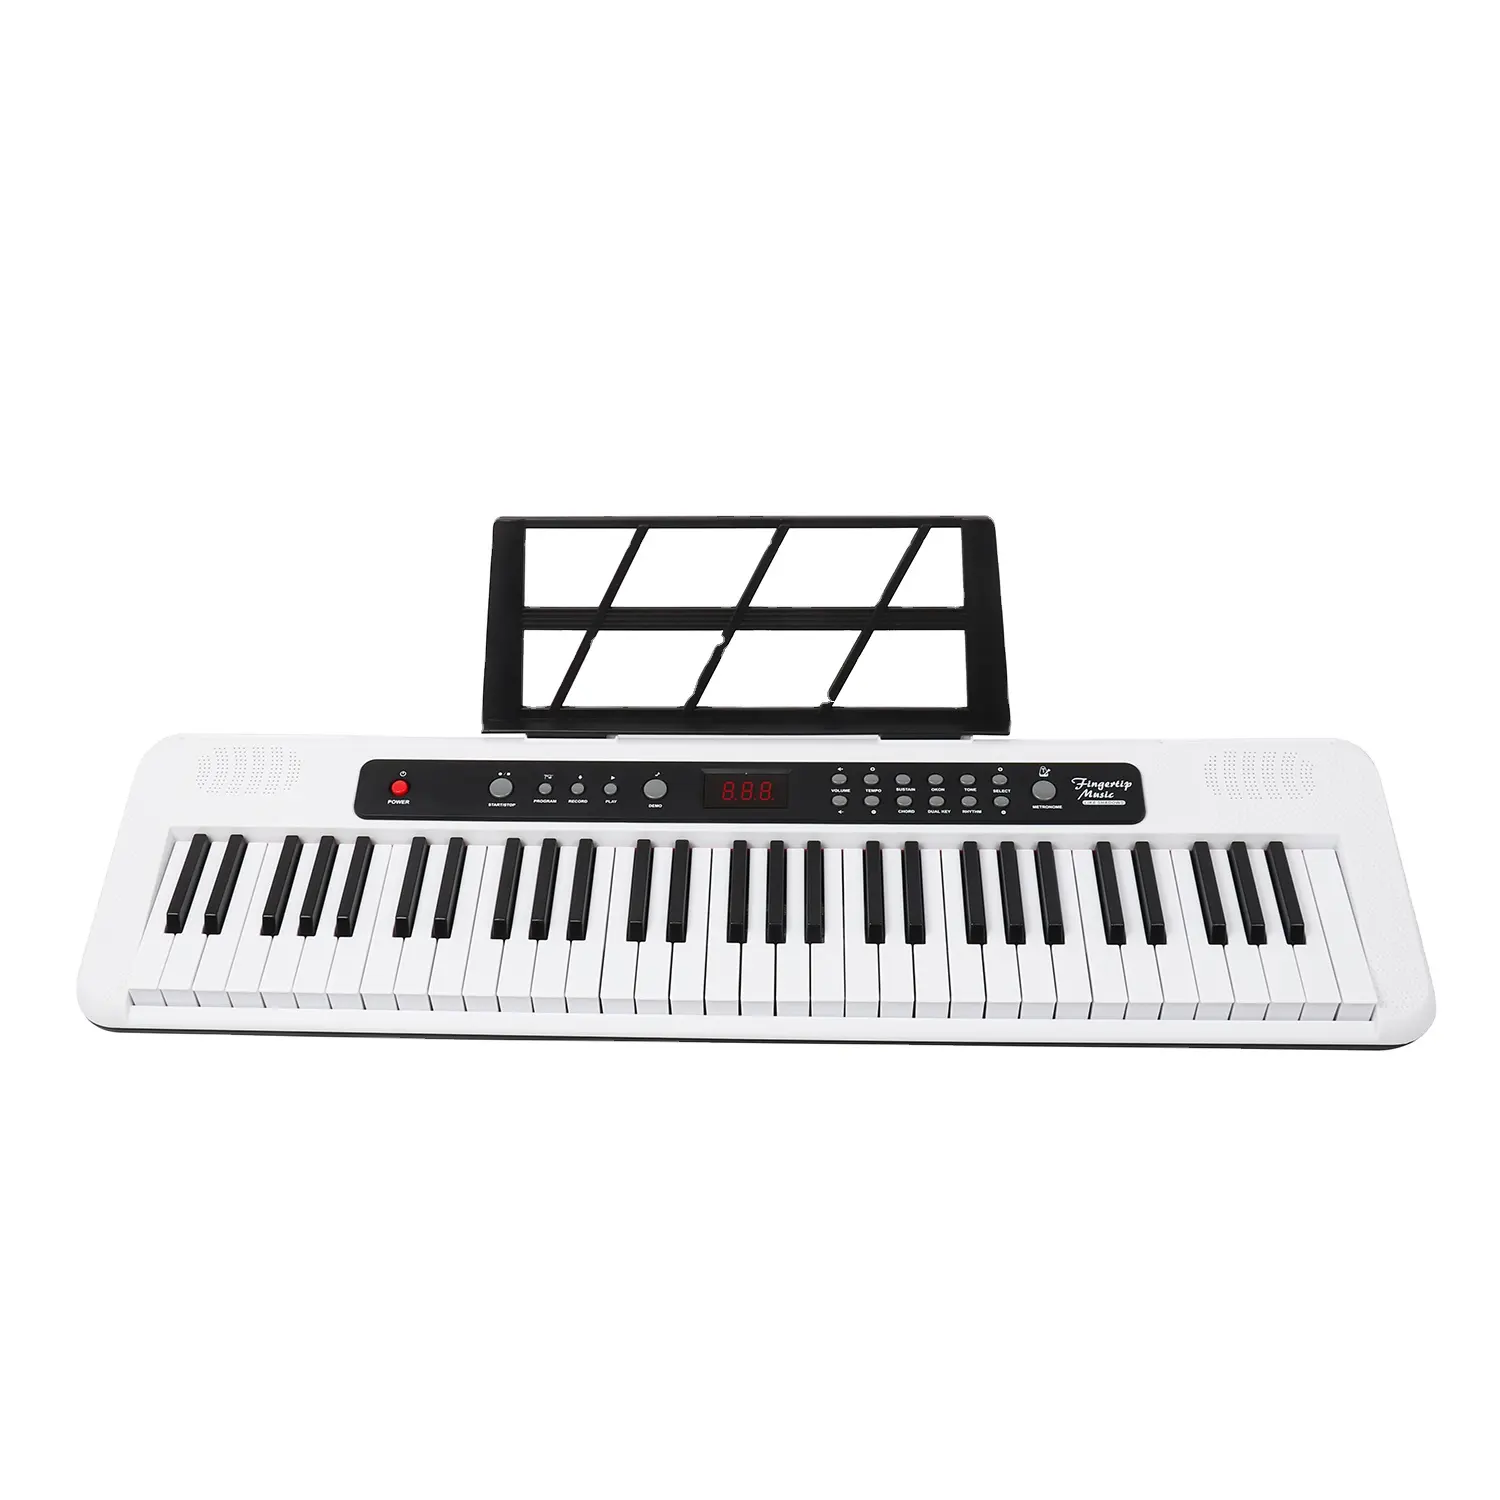 คีย์บอร์ดดนตรีสีขาวเปียโน 61 คีย์ซินธิไซเซอร์คีย์บอร์ดมาตรฐานพร้อมปุ่มตอบสนองแบบสัมผัสและจอแสดงผล LCD